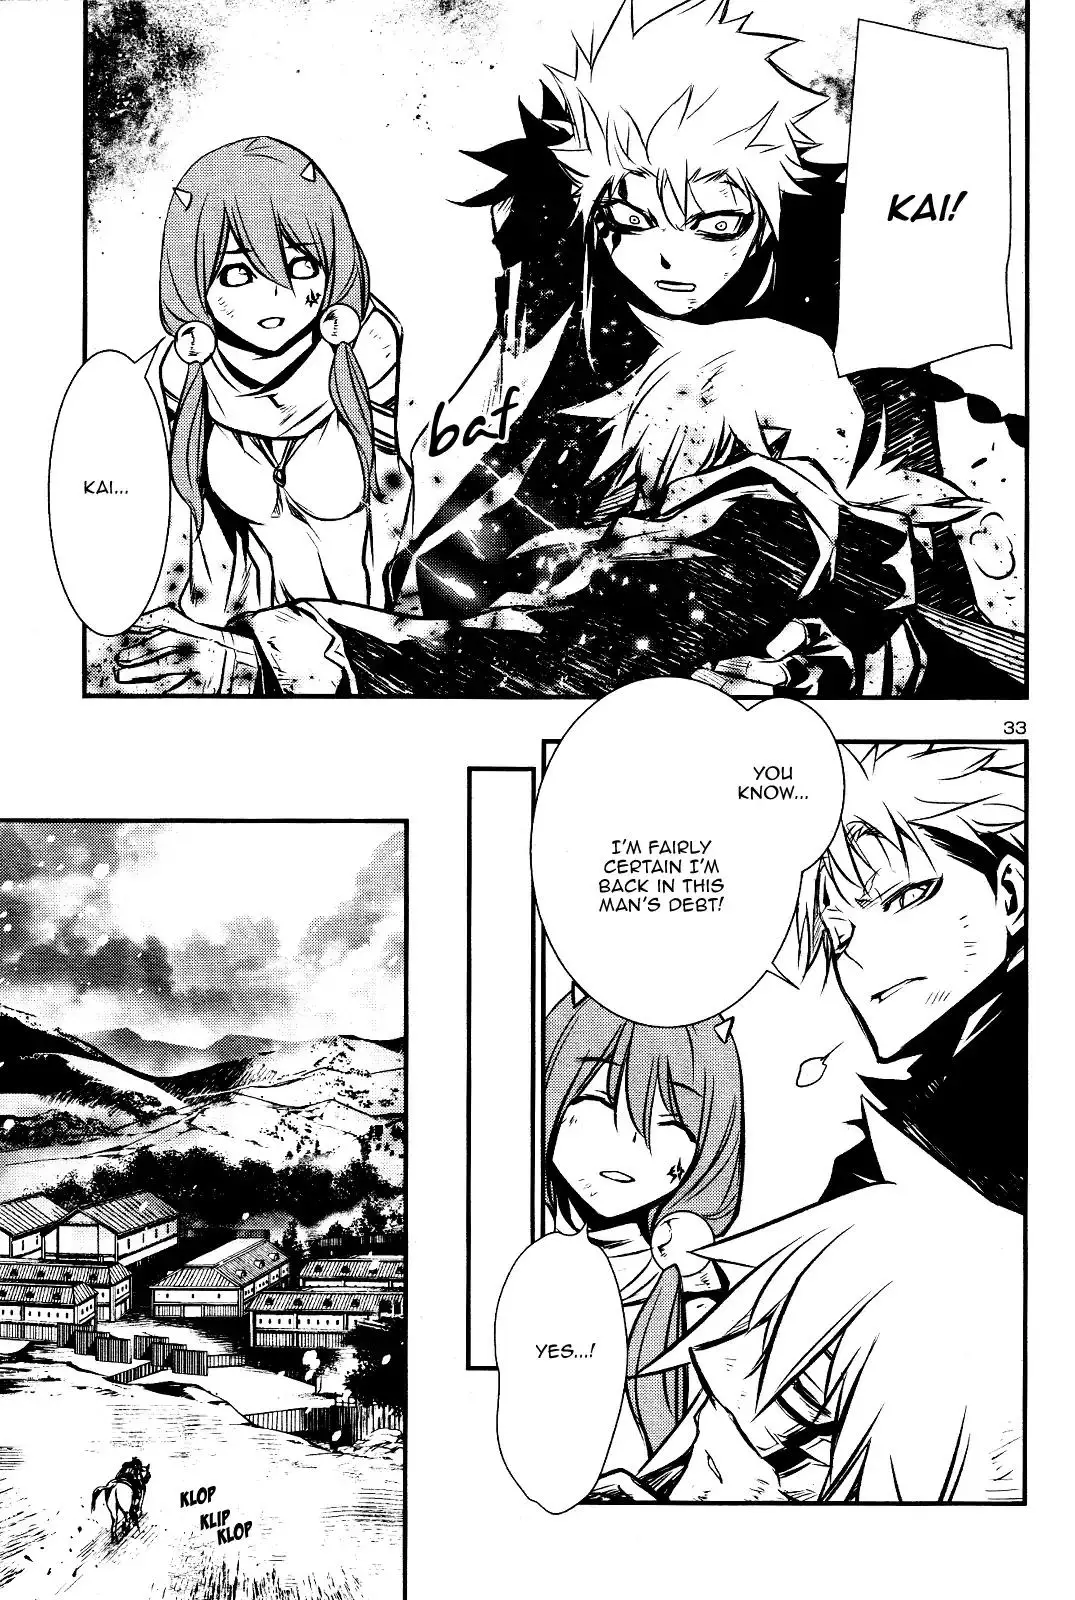 Shinju no Nectar - 28 page 29